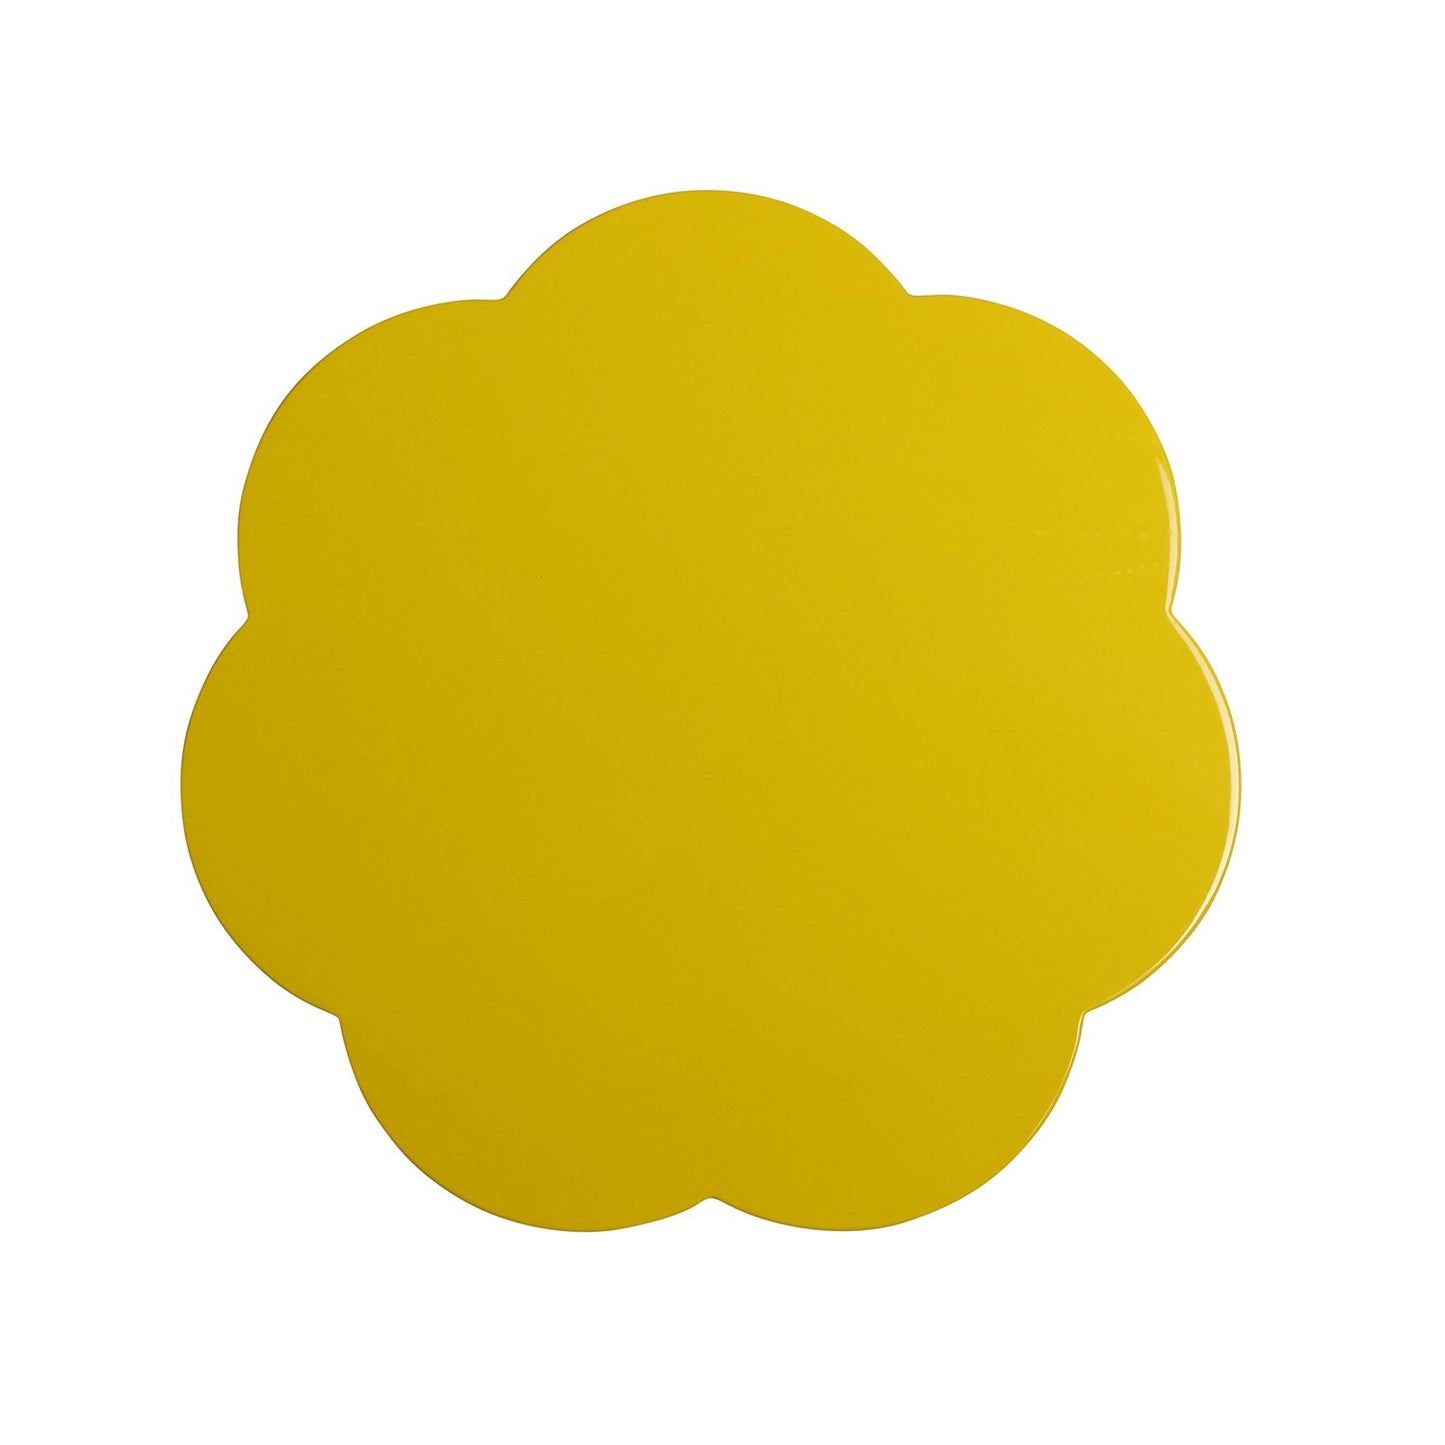 Tovagliette laccate gialle – Set da 4